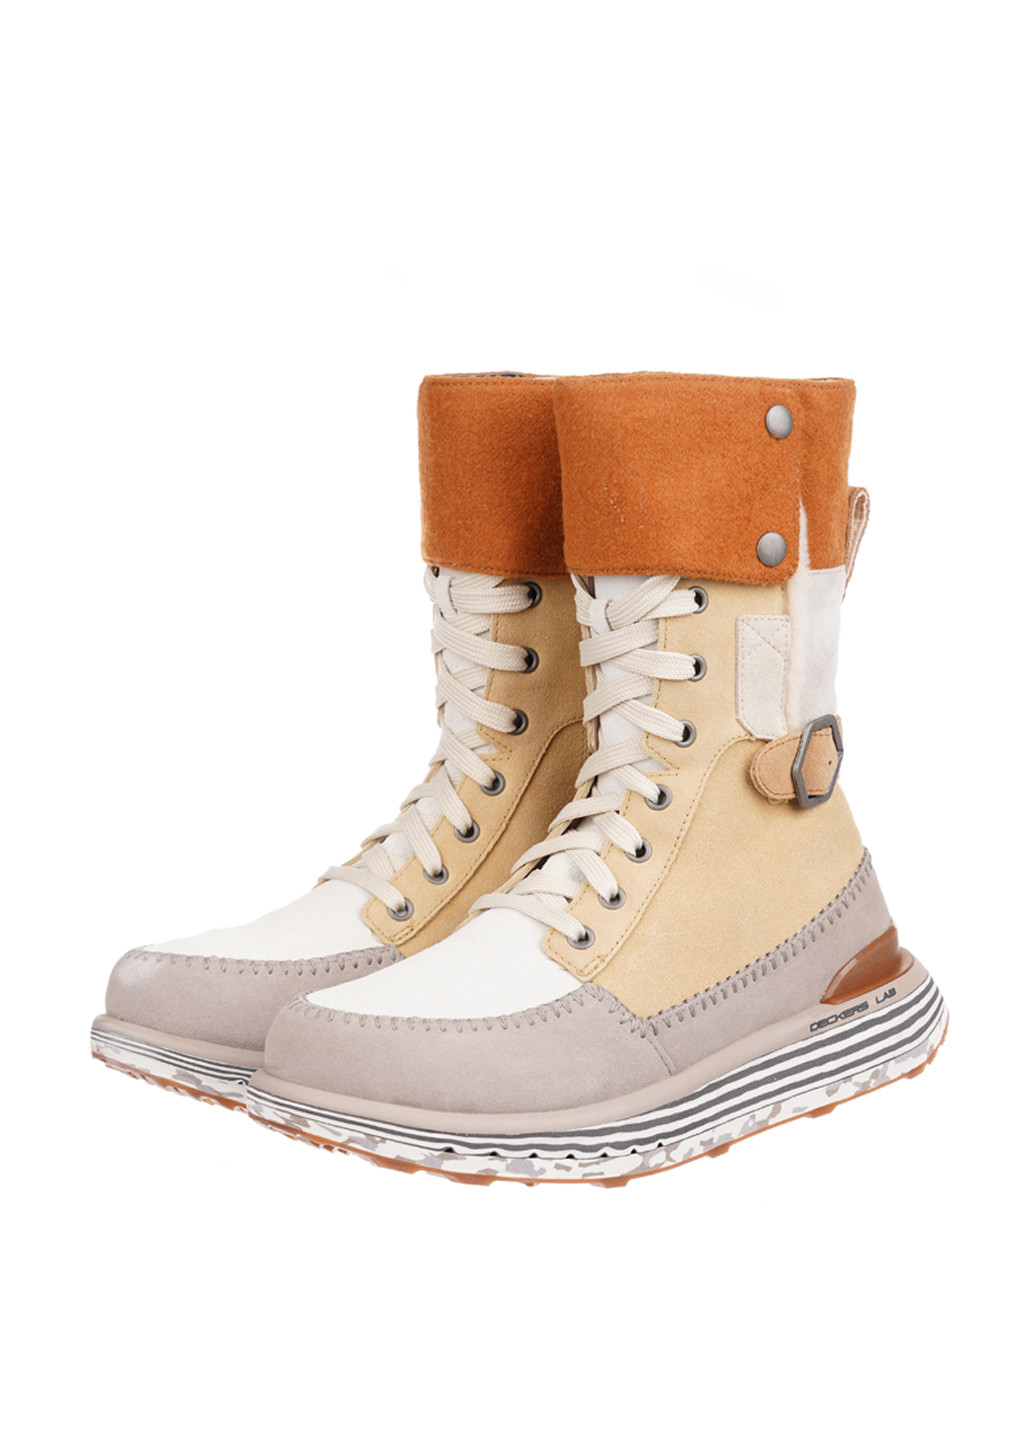 Зимние ботинки Deckers X Lab с пряжкой, со шнуровкой из натуральной замши, тканевые